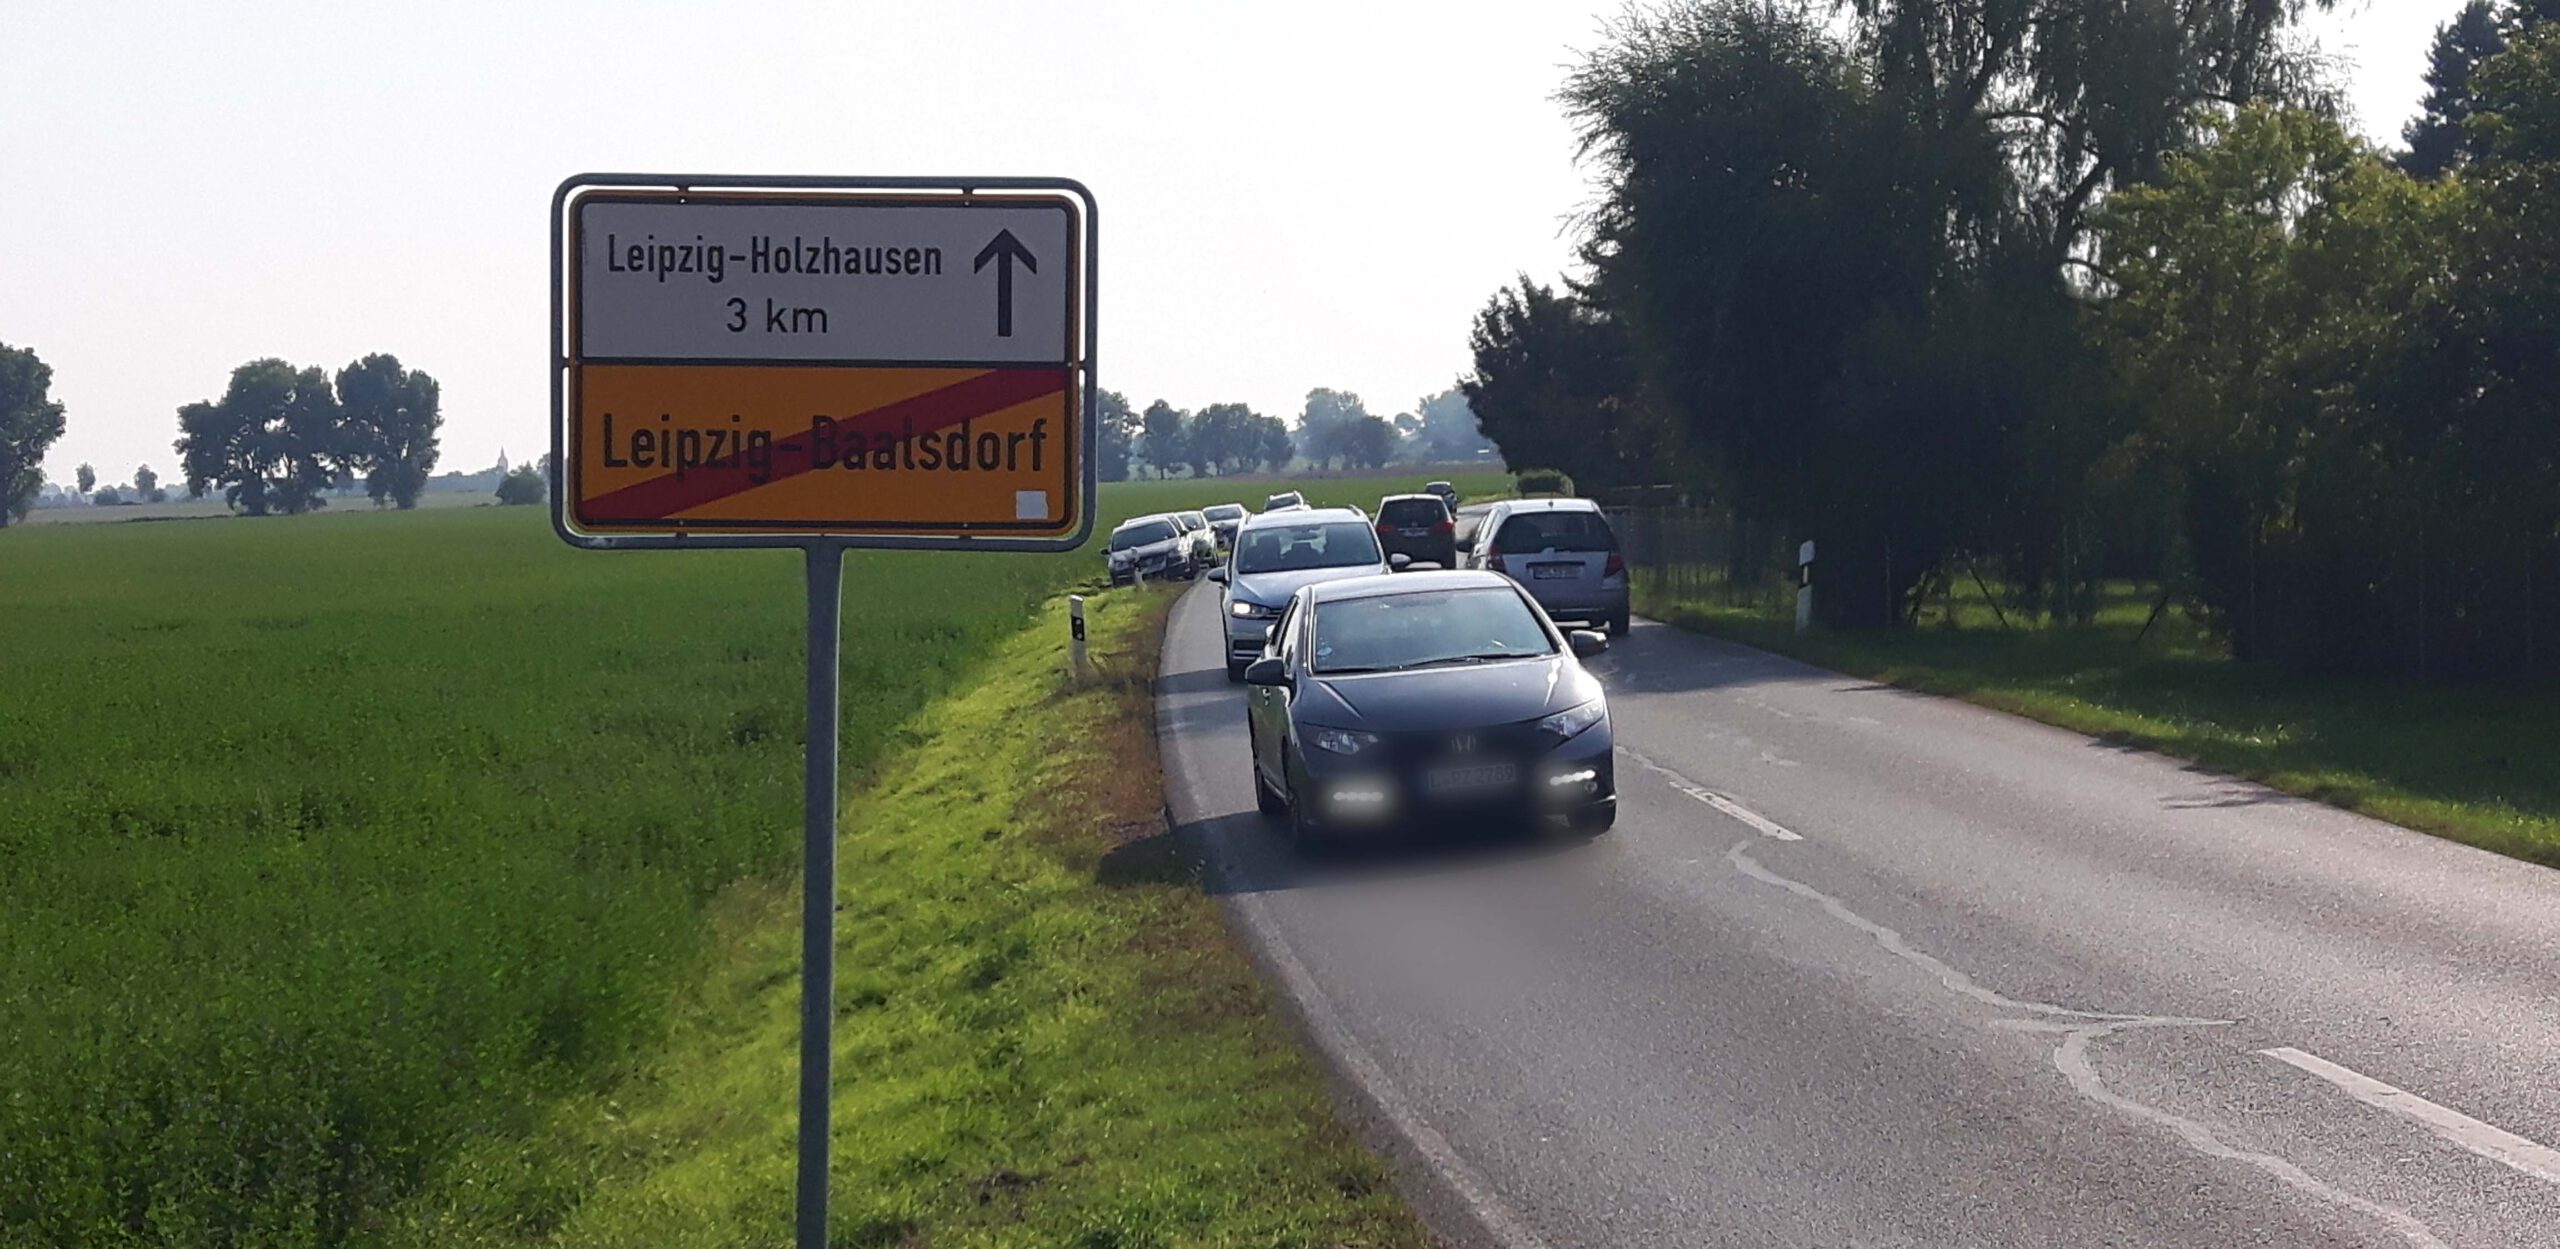 Zwischen Baalsdorf und Holzhausen soll neuer Fuß- und Radweg entstehen